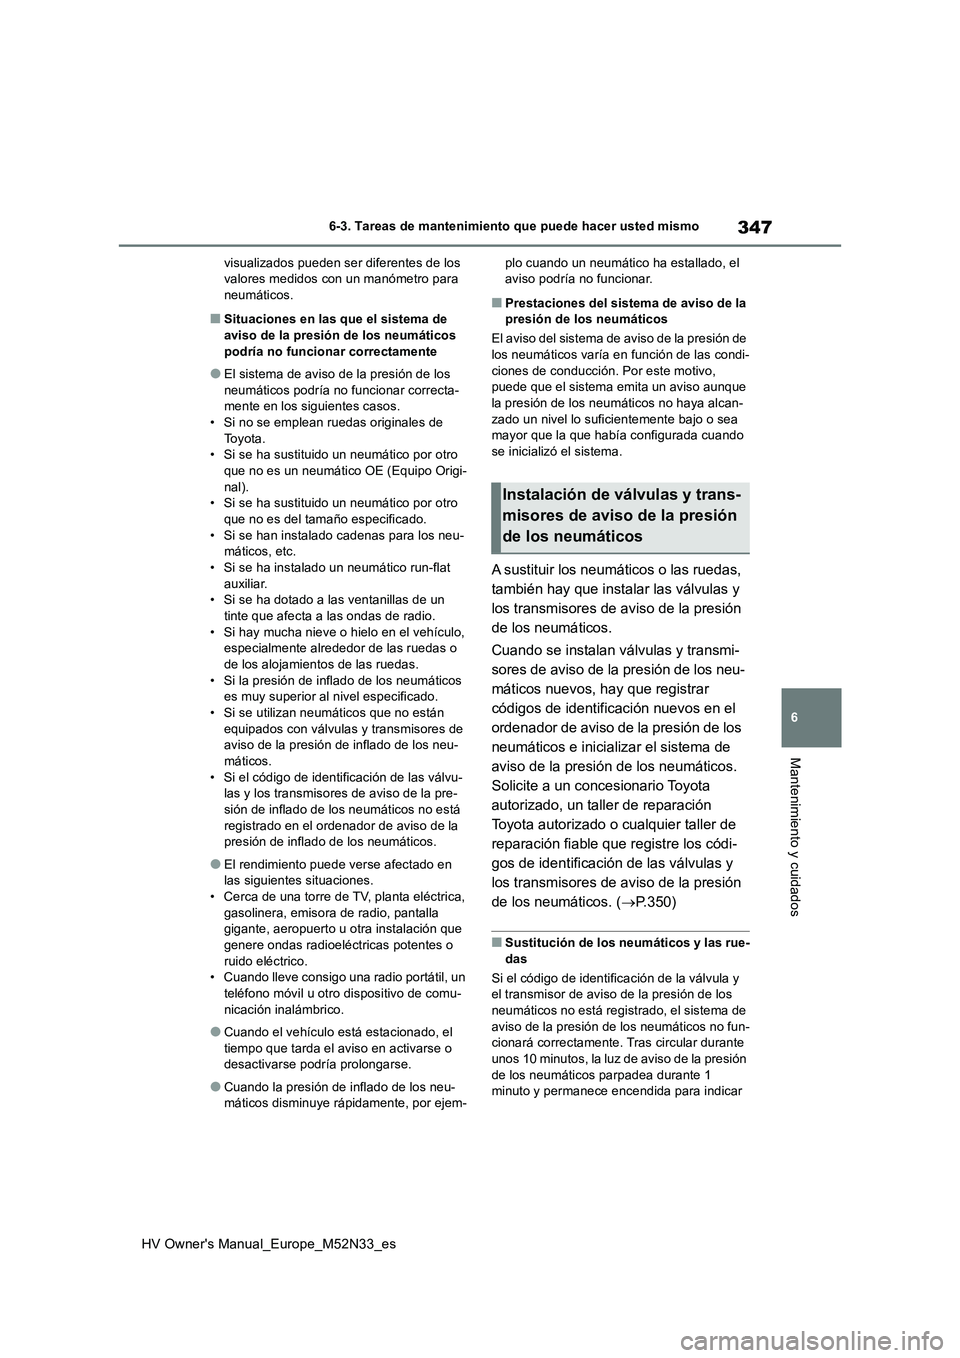 TOYOTA YARIS 2022  Manuale de Empleo (in Spanish) 347
6
HV Owner's Manual_Europe_M52N33_es
6-3. Tareas de mantenimiento que puede hacer usted mismo
Mantenimiento y cuidados
visualizados pueden ser diferentes de los  valores medidos con un manóme